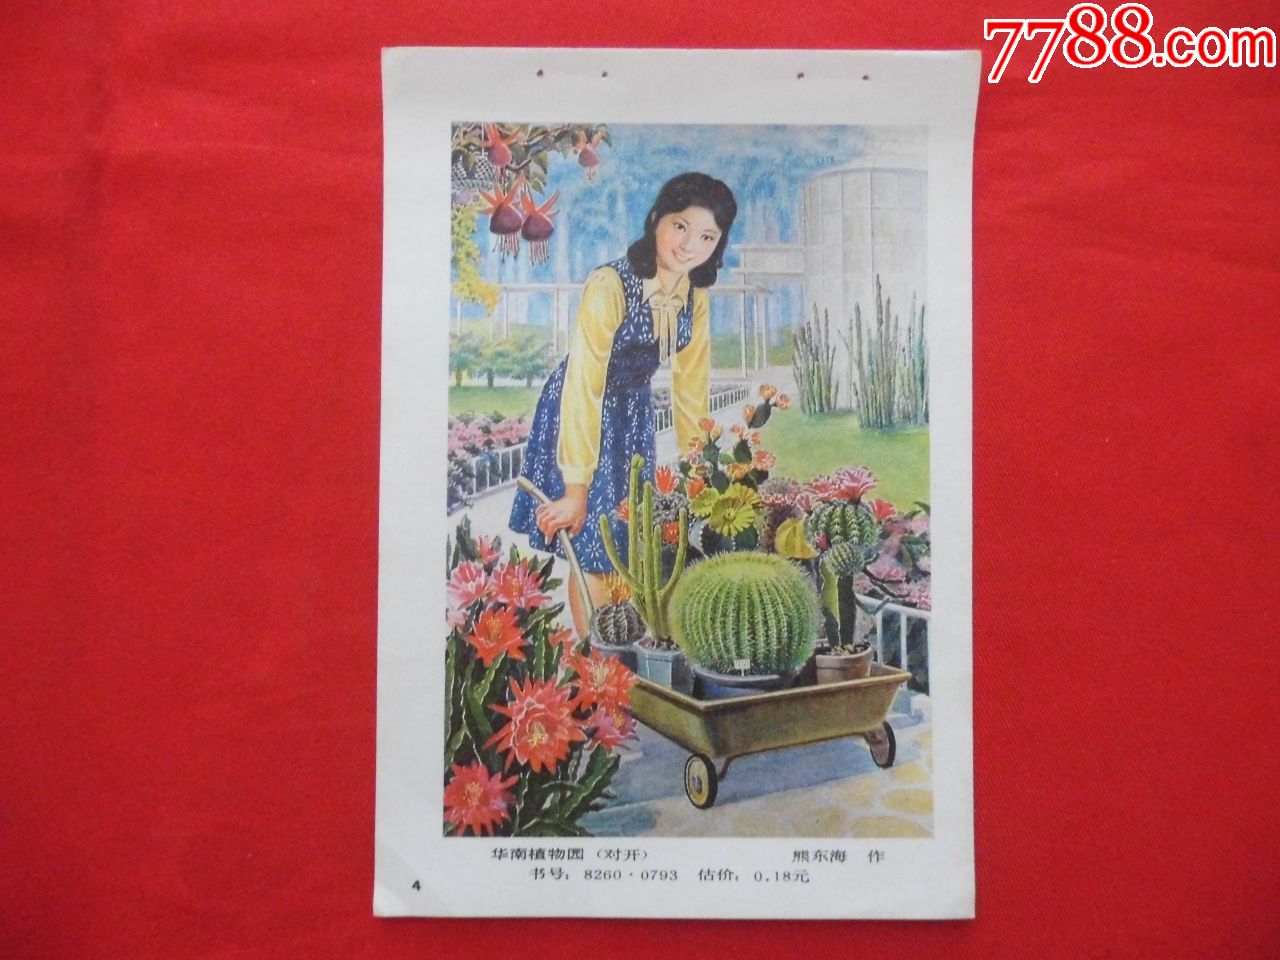 华南植物园-年画缩样散页-7788收藏